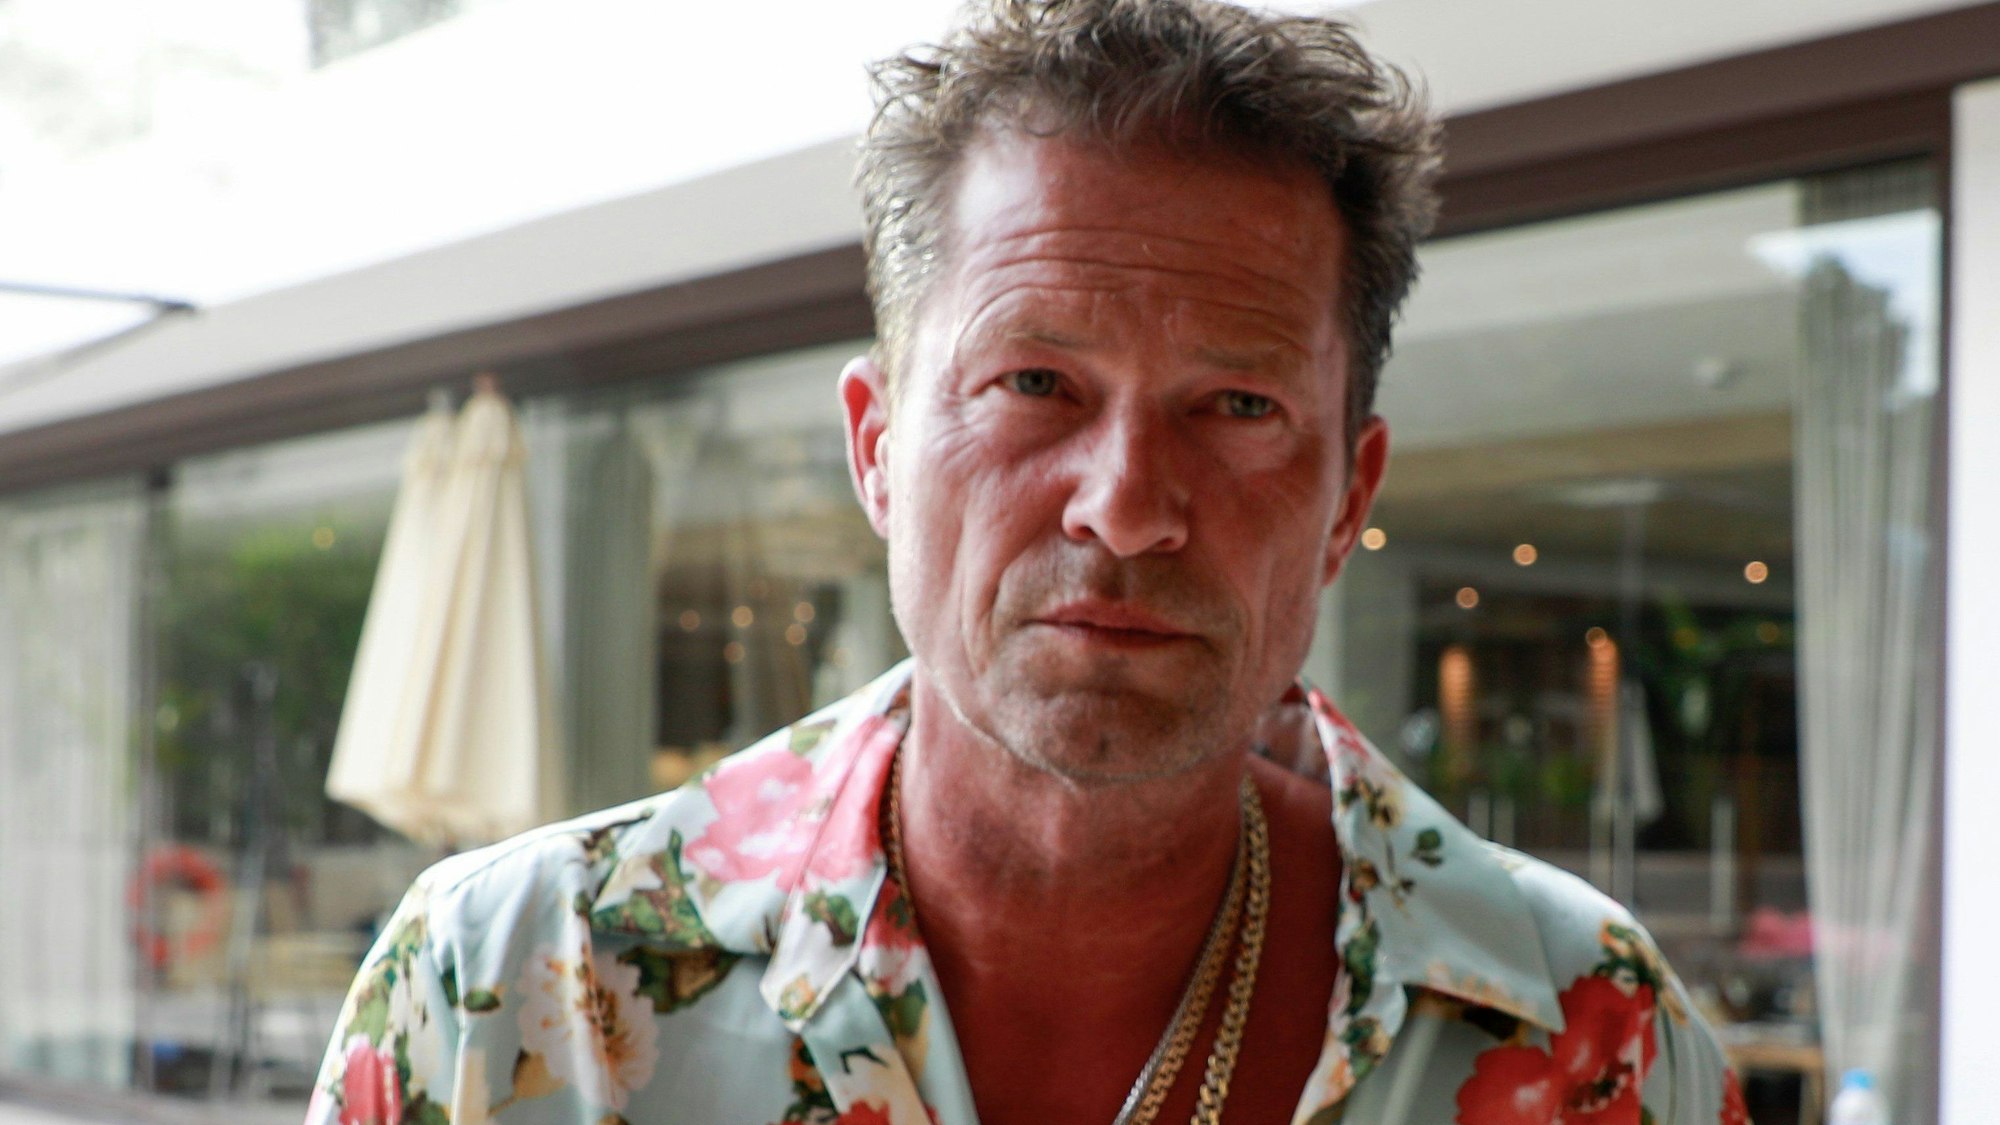 Der Schauspieler Til Schweiger steht am Set des Films „Hollywood and crime“ im Hotel Barefoot auf Mallorca. In einem Interview hat Schweiger nun Jan Böhmermann attackiert. (Archivbild)